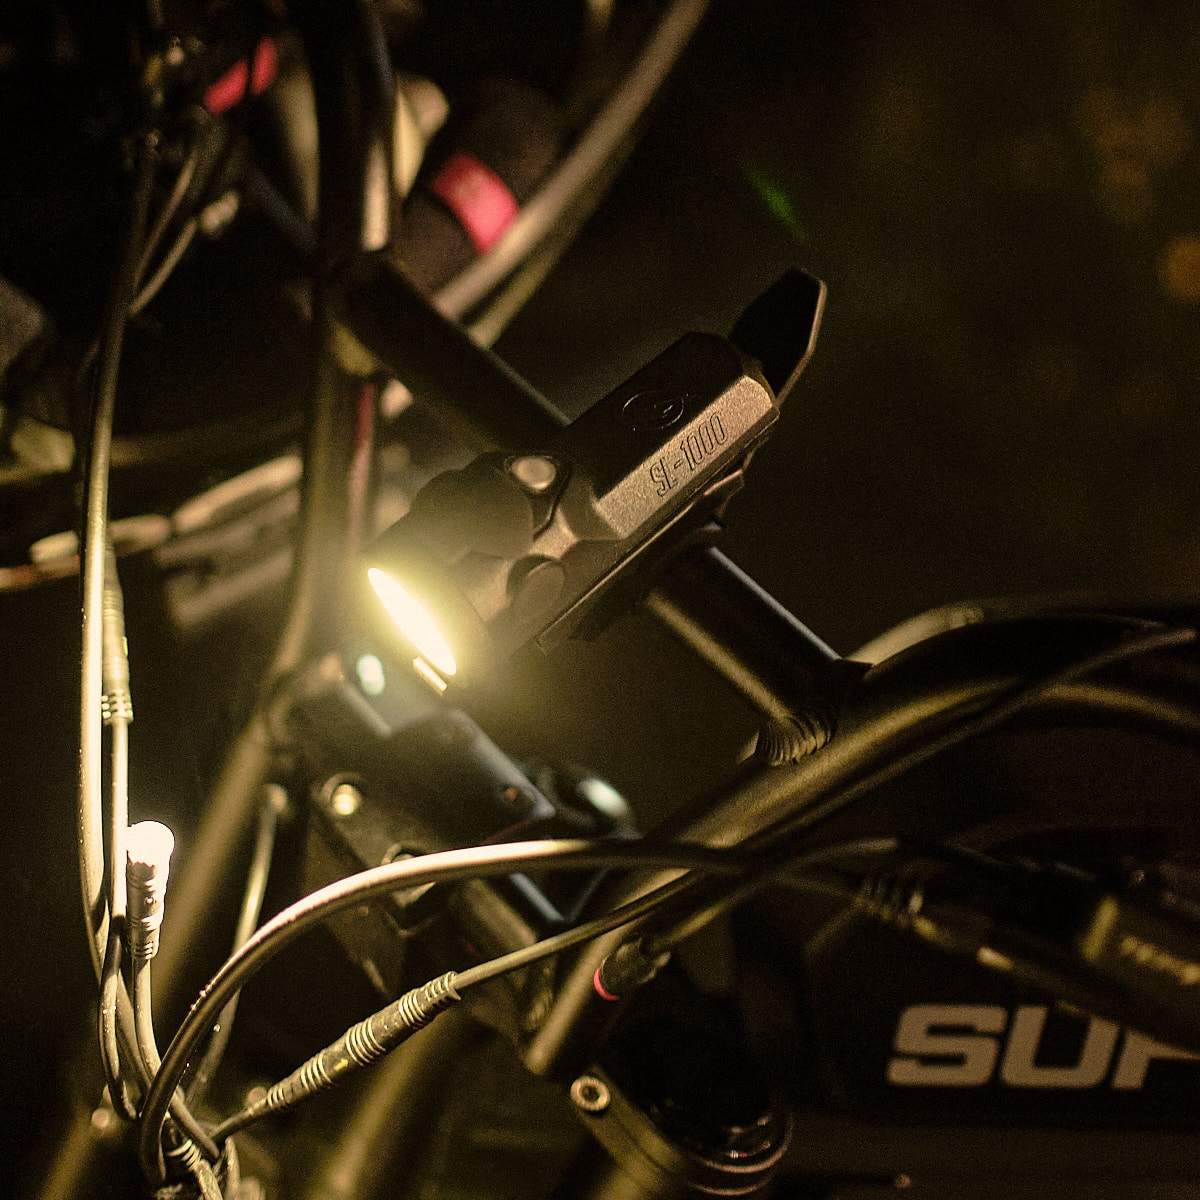 SL-1000 Bike Headlight